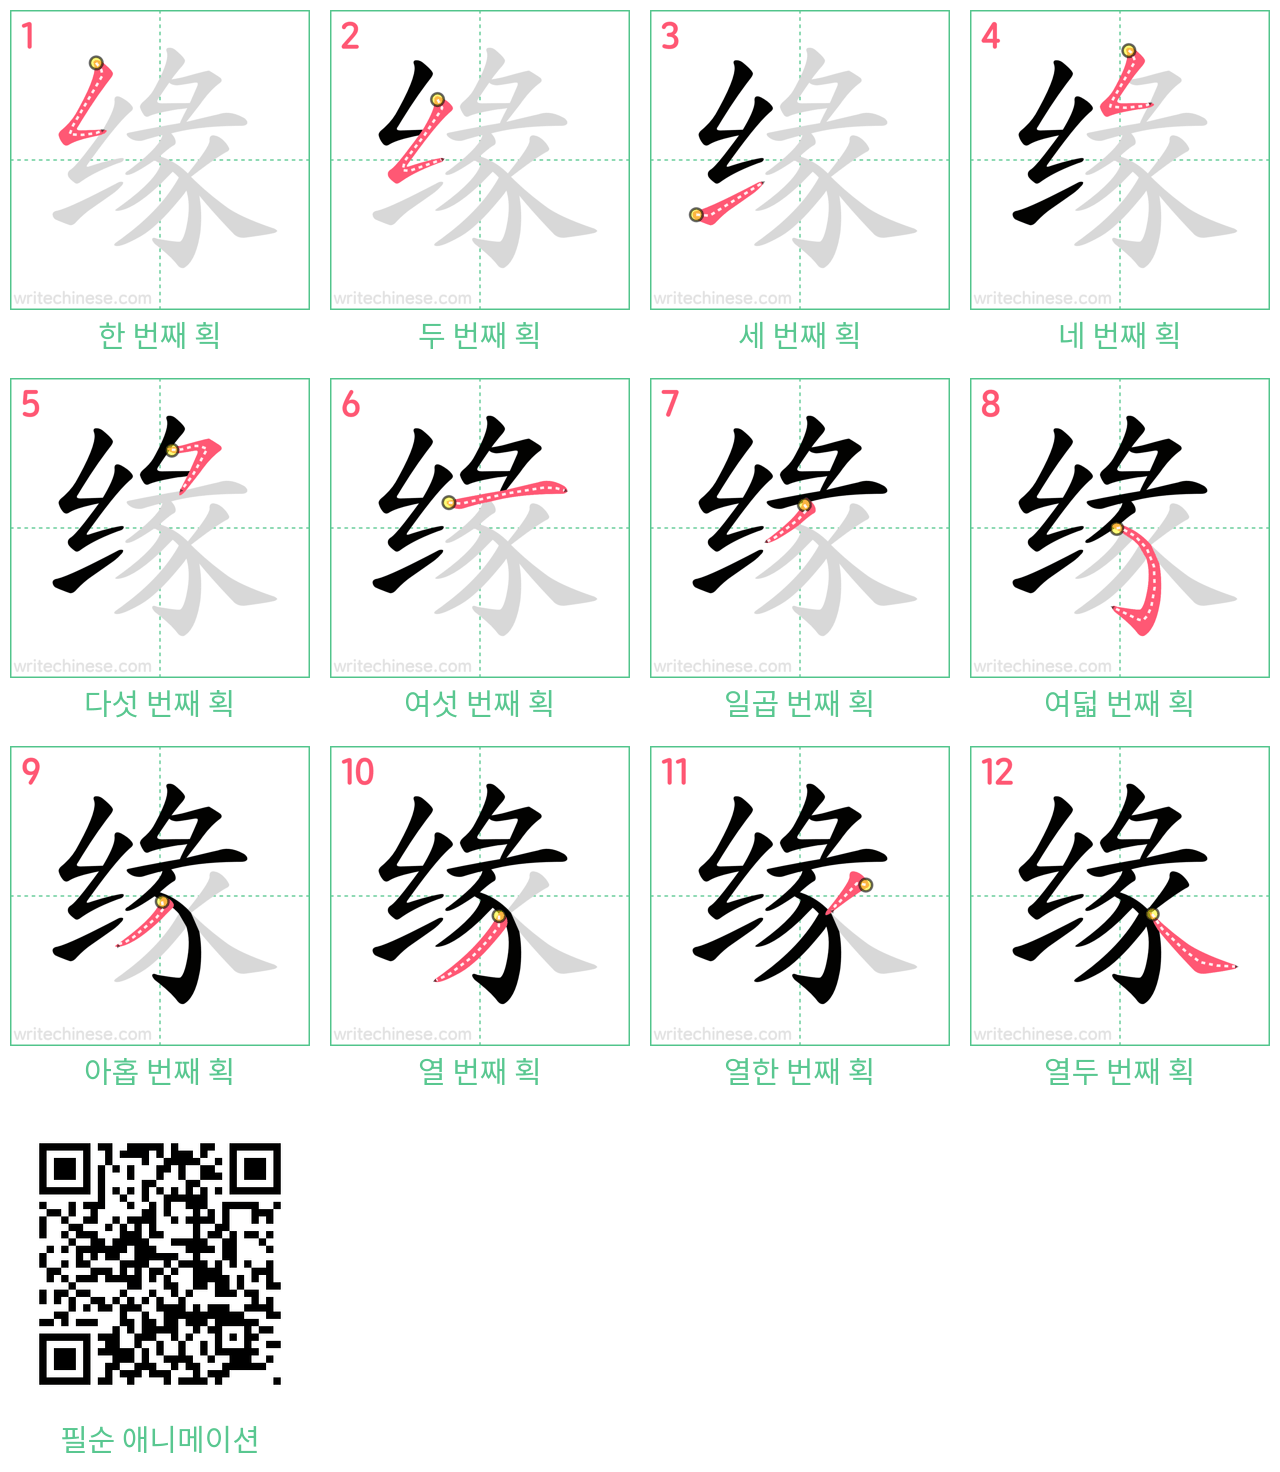 缘 step-by-step stroke order diagrams